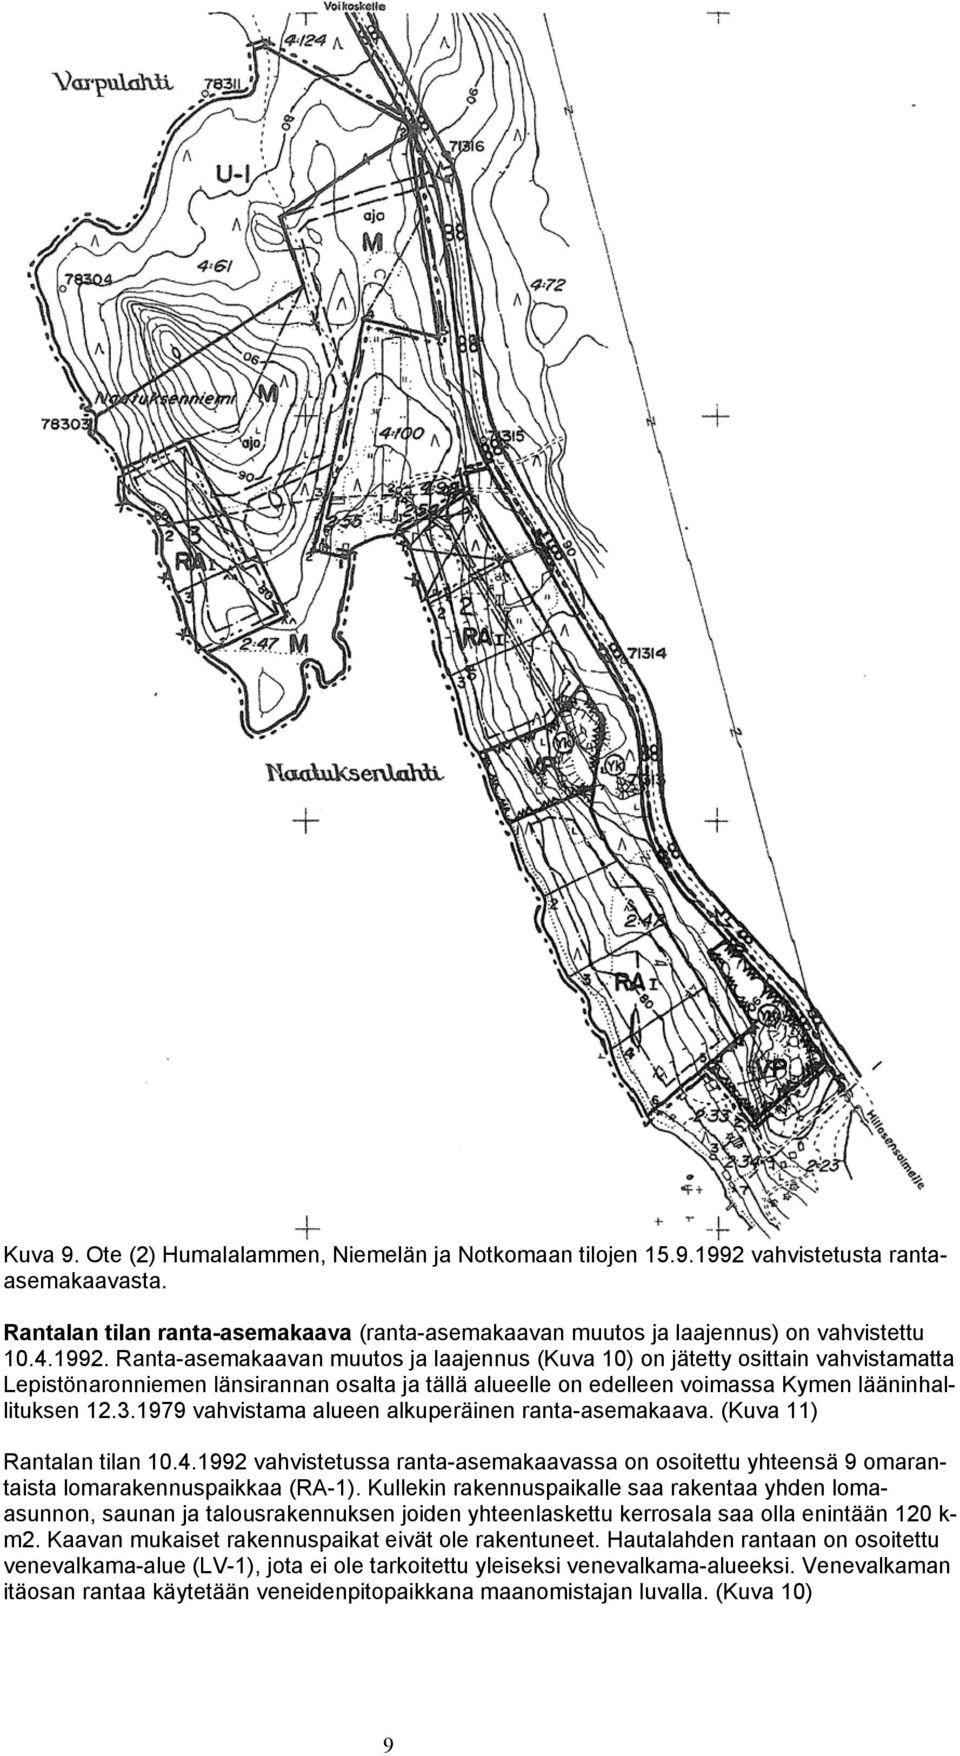 1979 vahvistama alueen alkuperäinen ranta-asemakaava. (Kuva 11) Rantalan tilan 10.4.1992 vahvistetussa ranta-asemakaavassa on osoitettu yhteensä 9 omarantaista lomarakennuspaikkaa (RA-1).